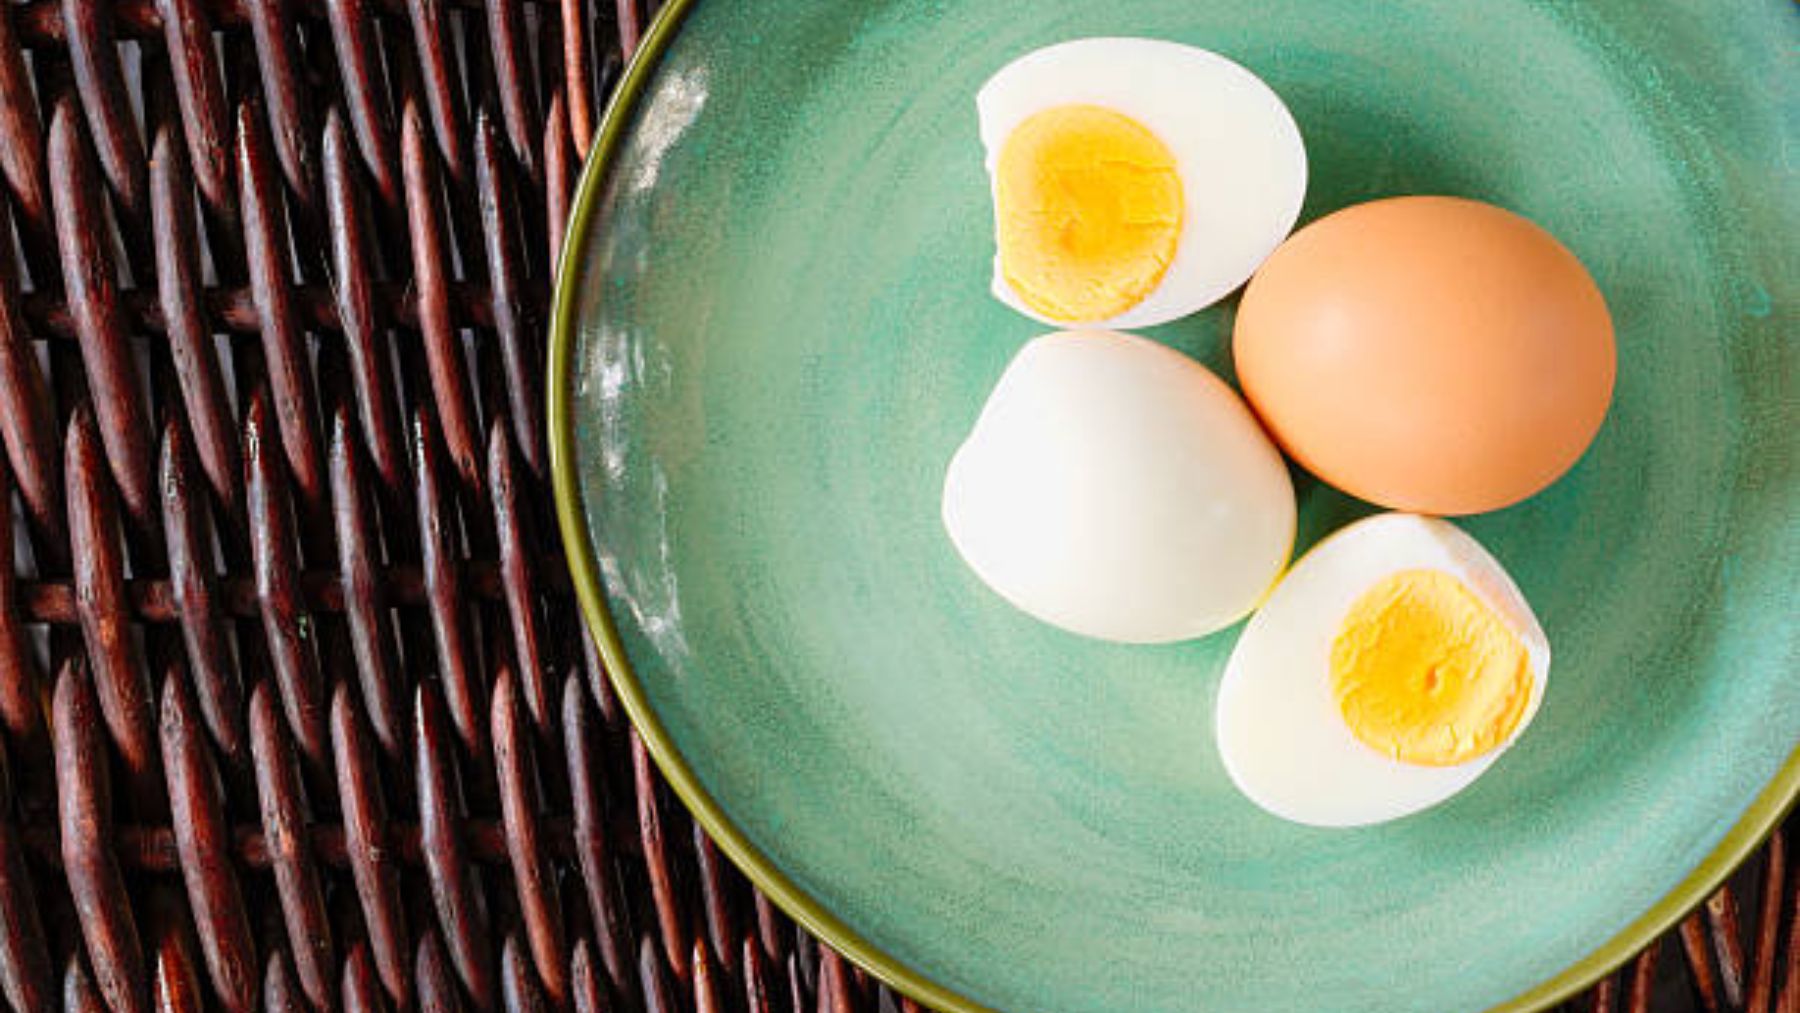 Huevos duros al microondas, cómo hacer huevos cocidos en el microondas